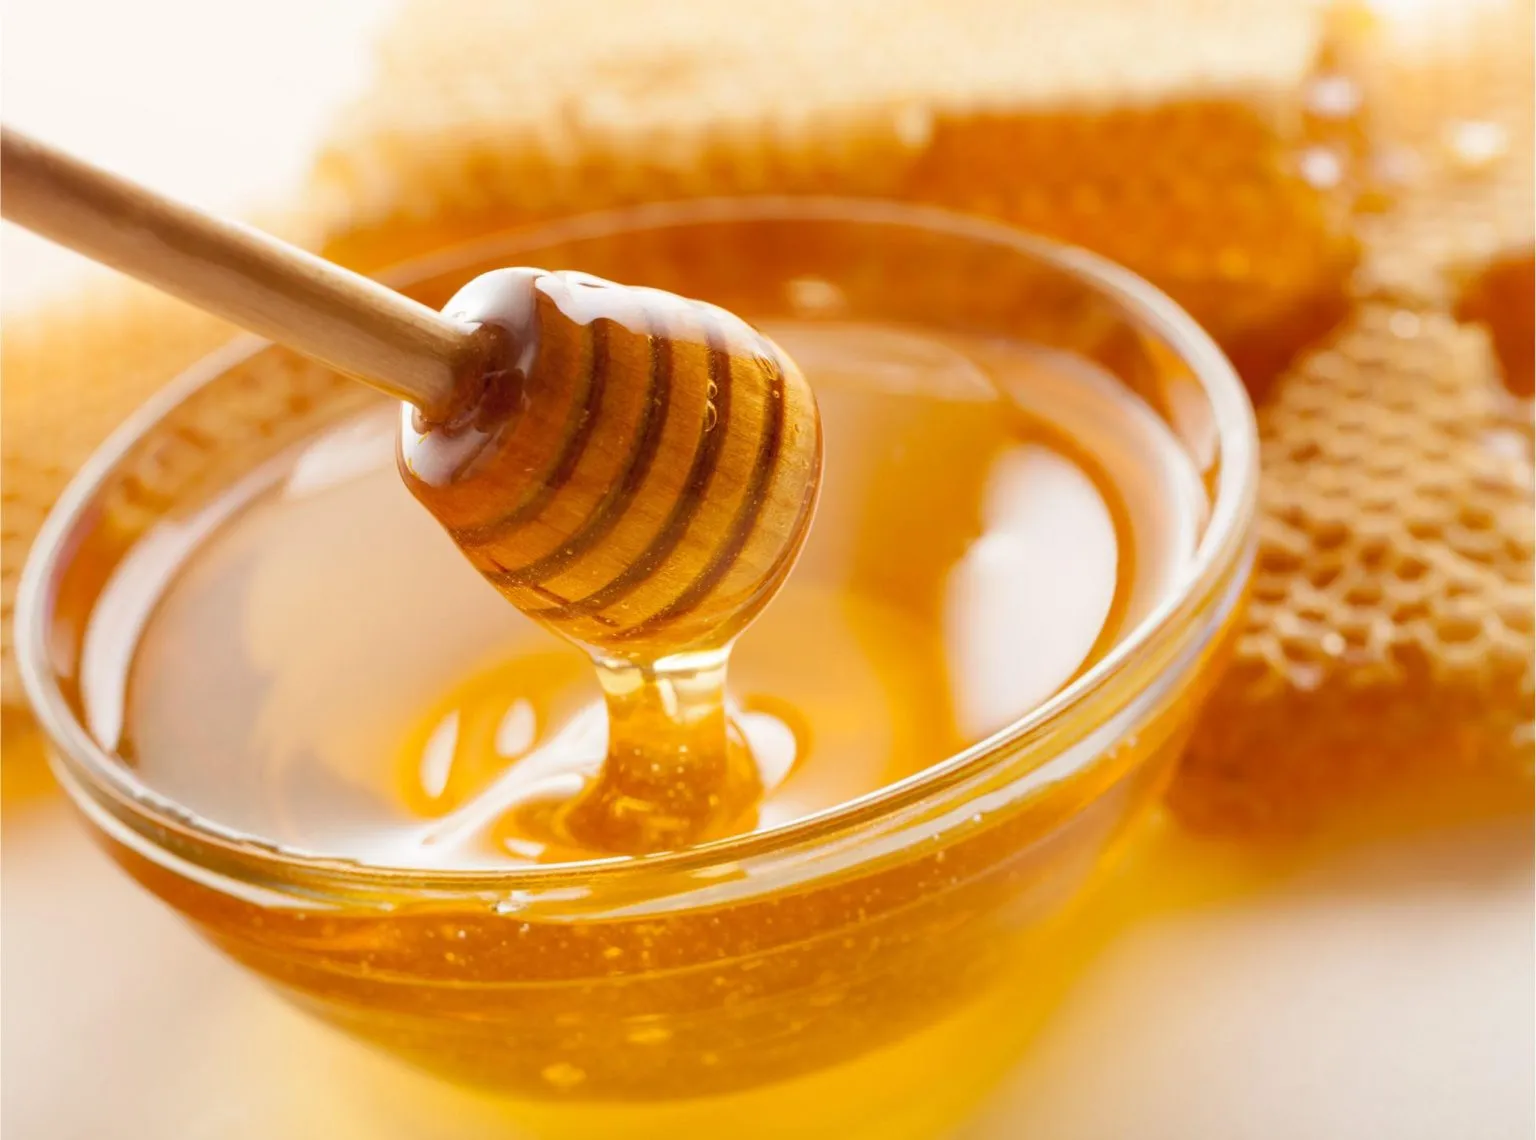 研究人员发现食用蜂蜜能改善心脏代谢健康